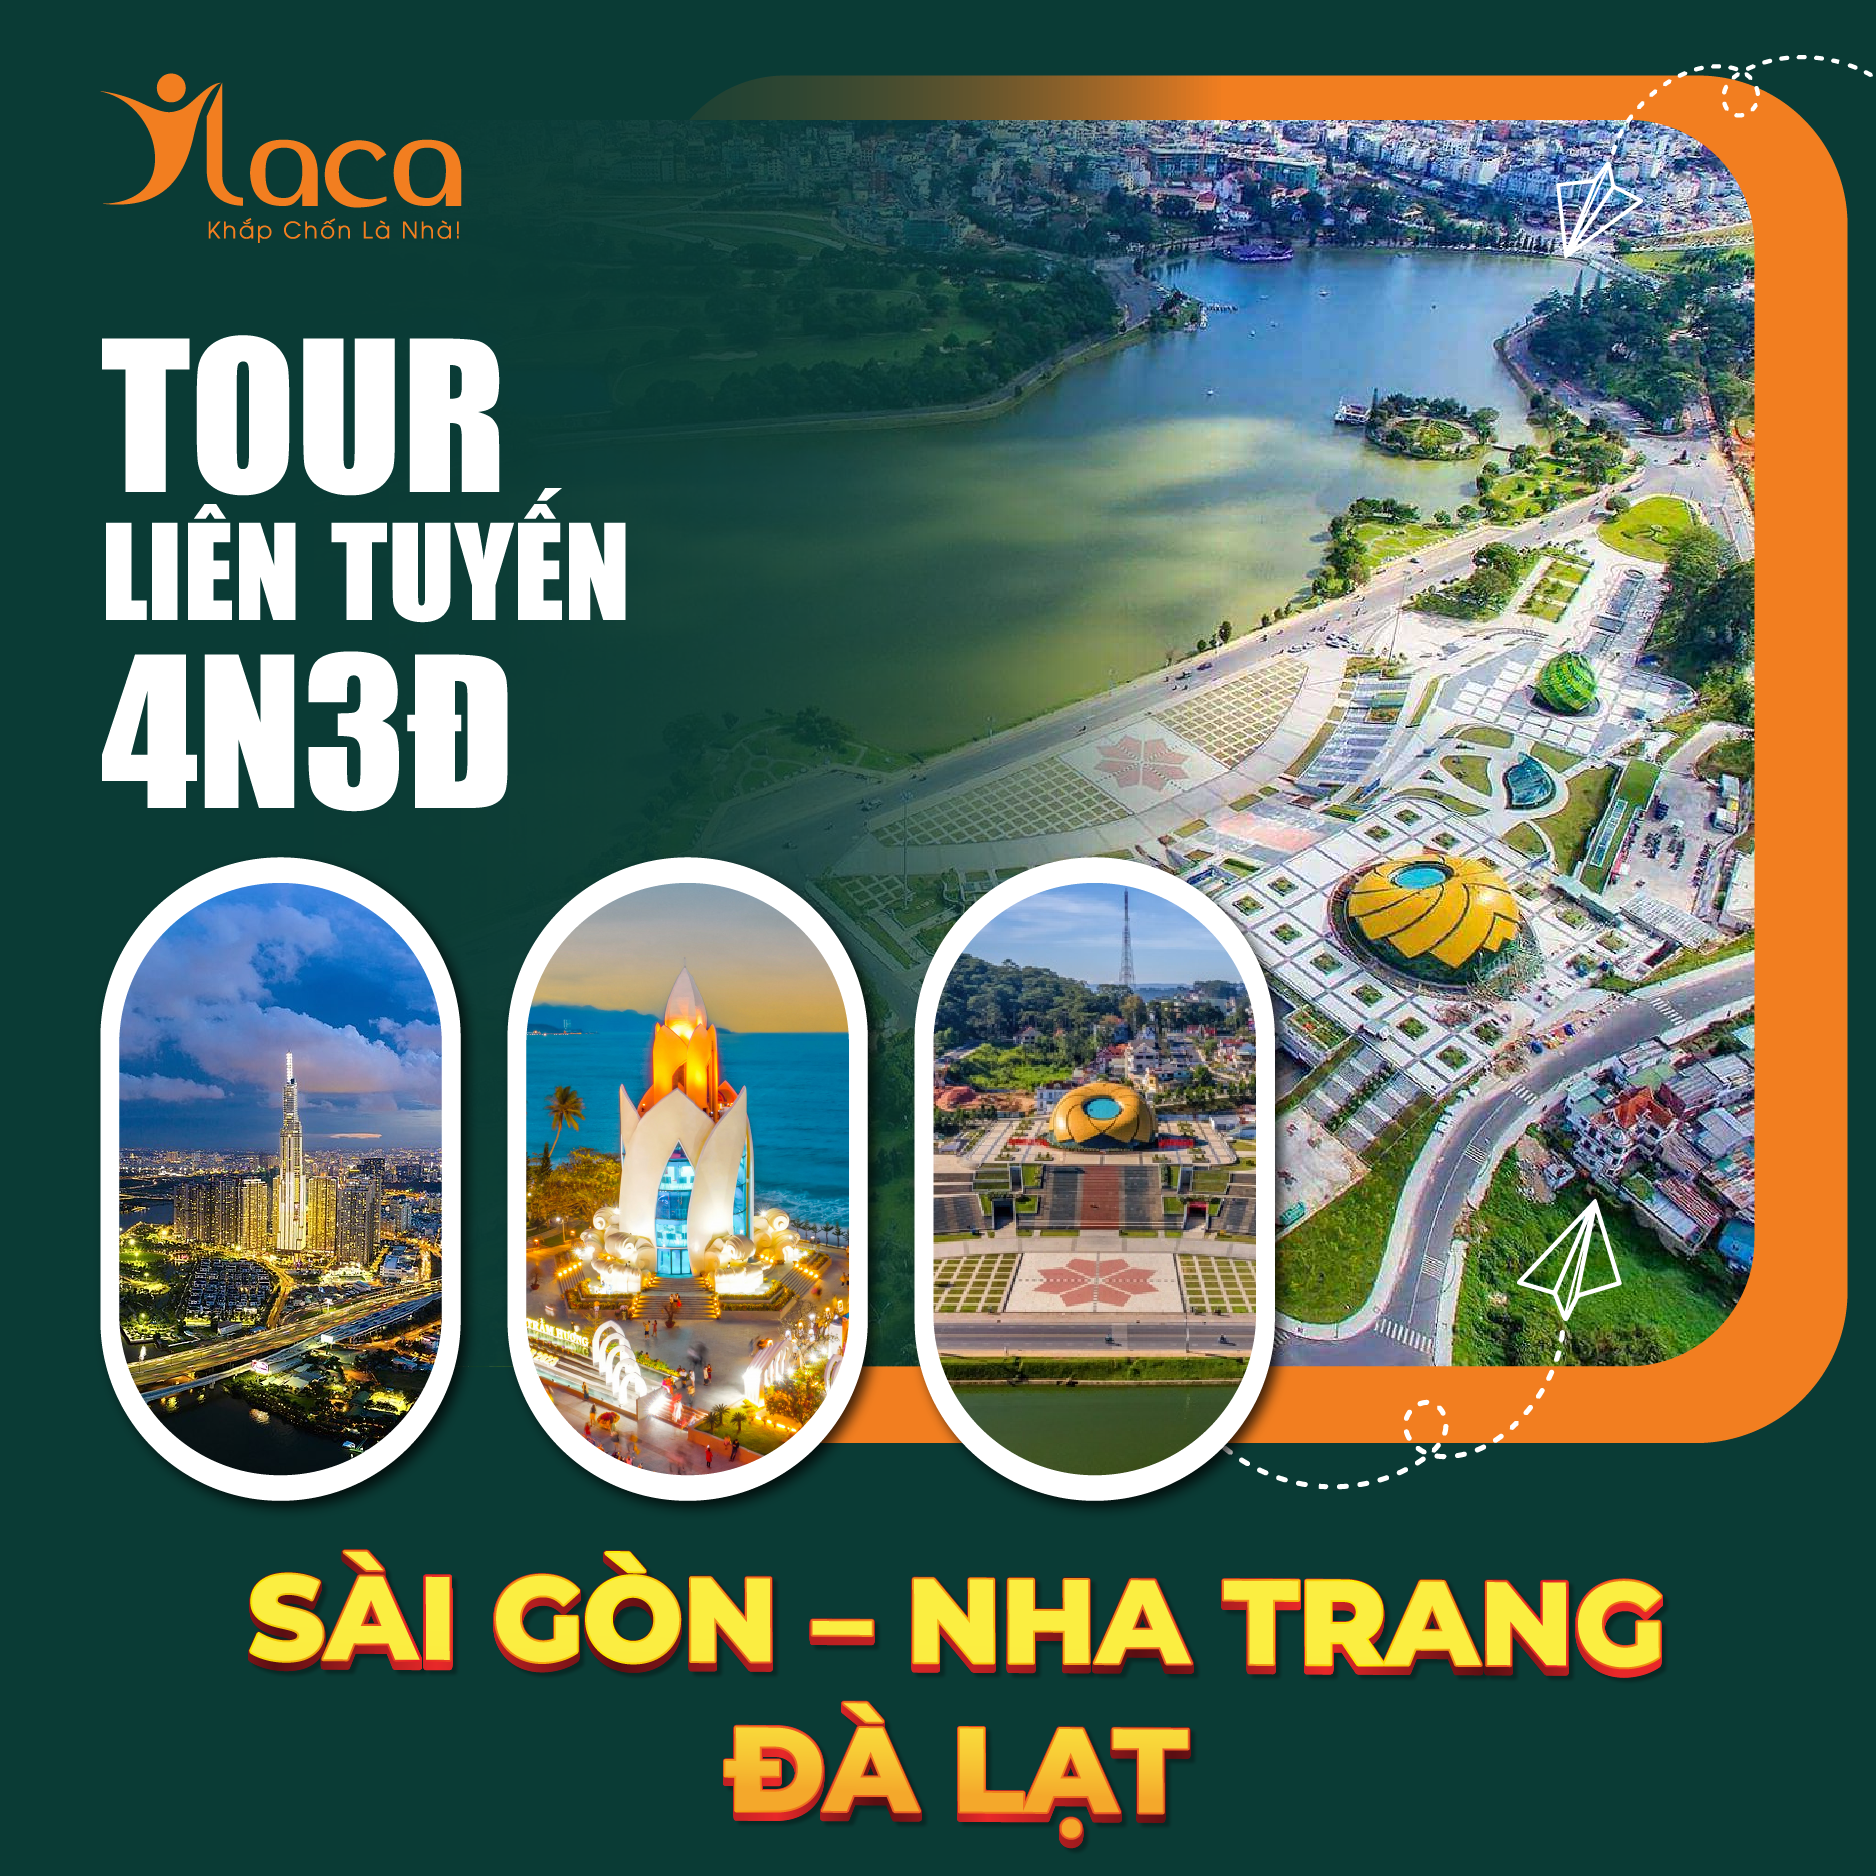 Tour Liên Tuyến 4 Ngày 4 Đêm: Sài Gòn – Nha Trang – Đà Lạt